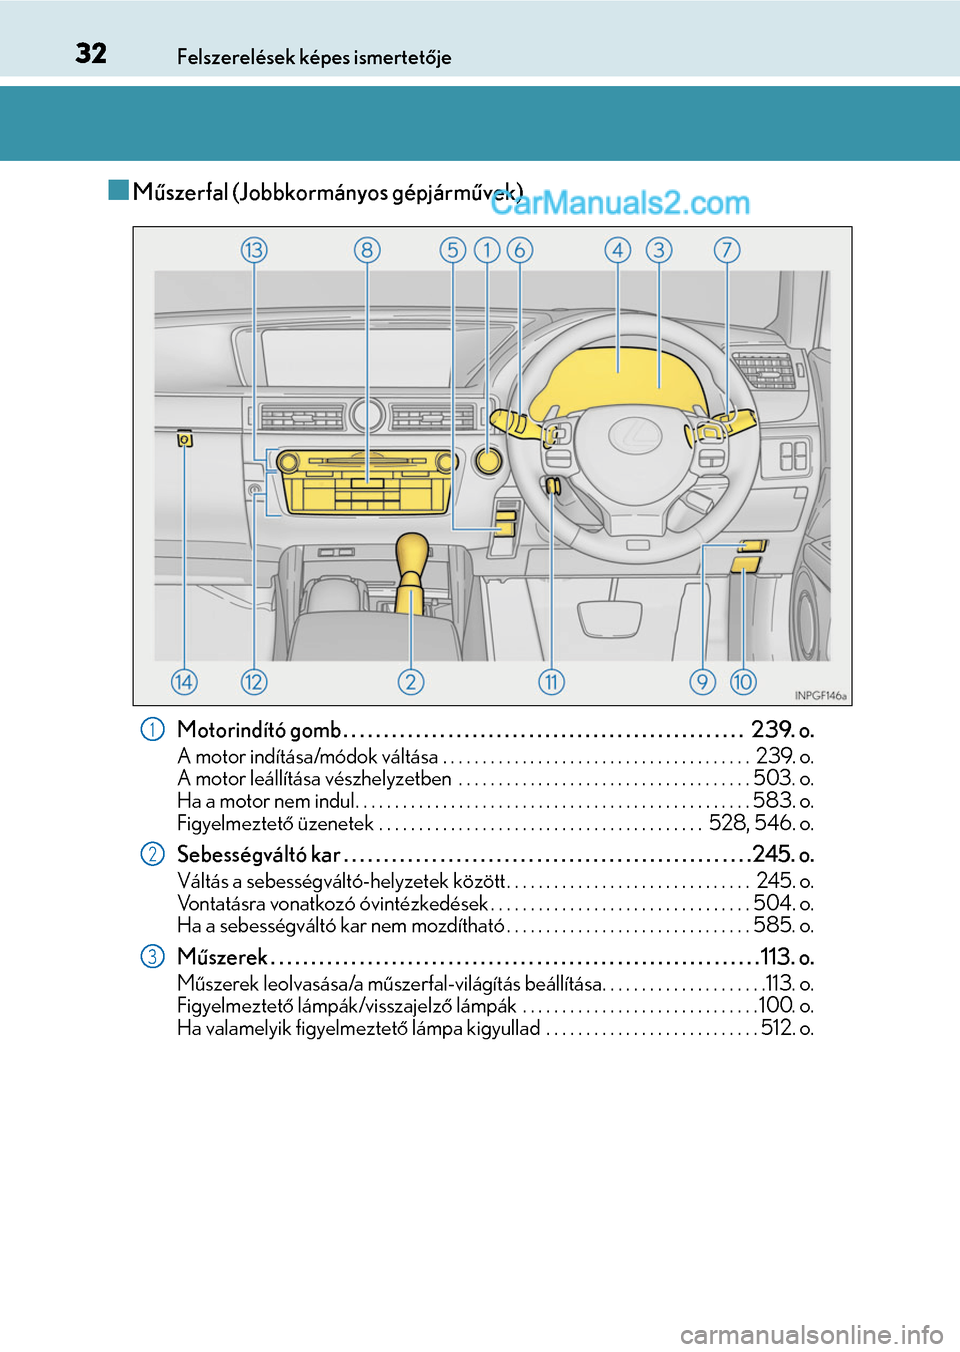 Lexus GS F 2015  Kezelési útmutató (in Hungarian) 32Felszerelések képes ismertetője
Műszerfal (Jobbkormányos gépjárművek)
Motorindító gomb . . . . . . . . . . . . . . . . . . . . . . . . . . . . . . . . . . . . . . . . . . . . . . . . . 